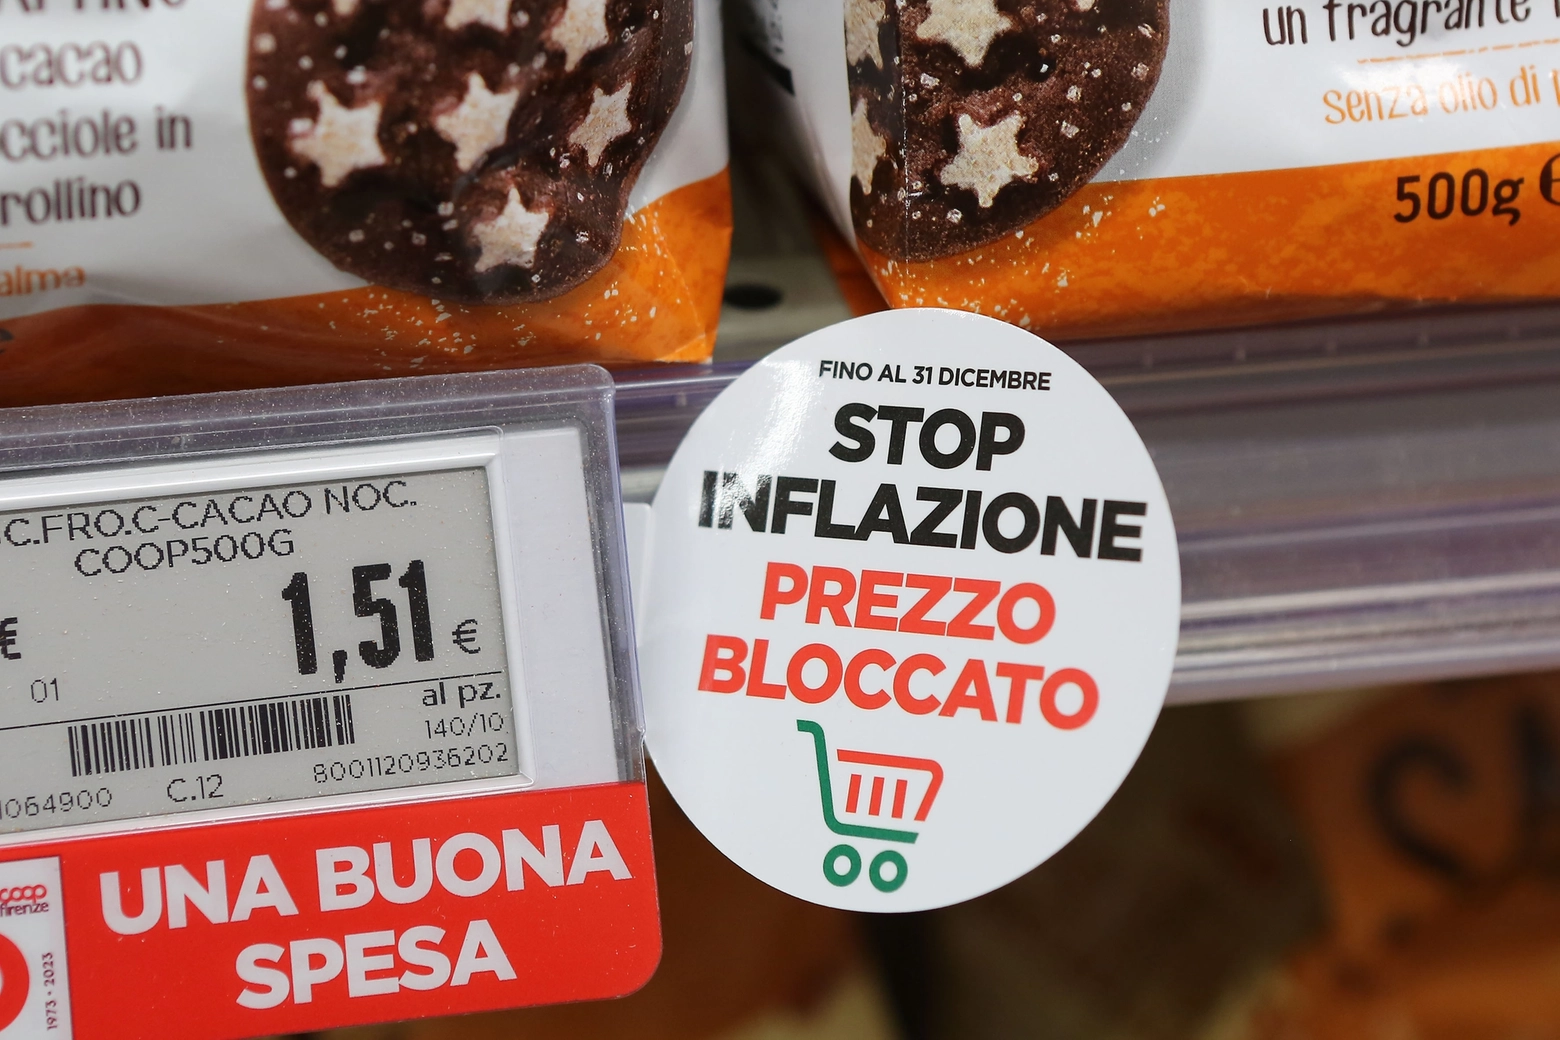 Carrello tricolore: il bollino non si trova ancora in tutti i supermercati di Bologna